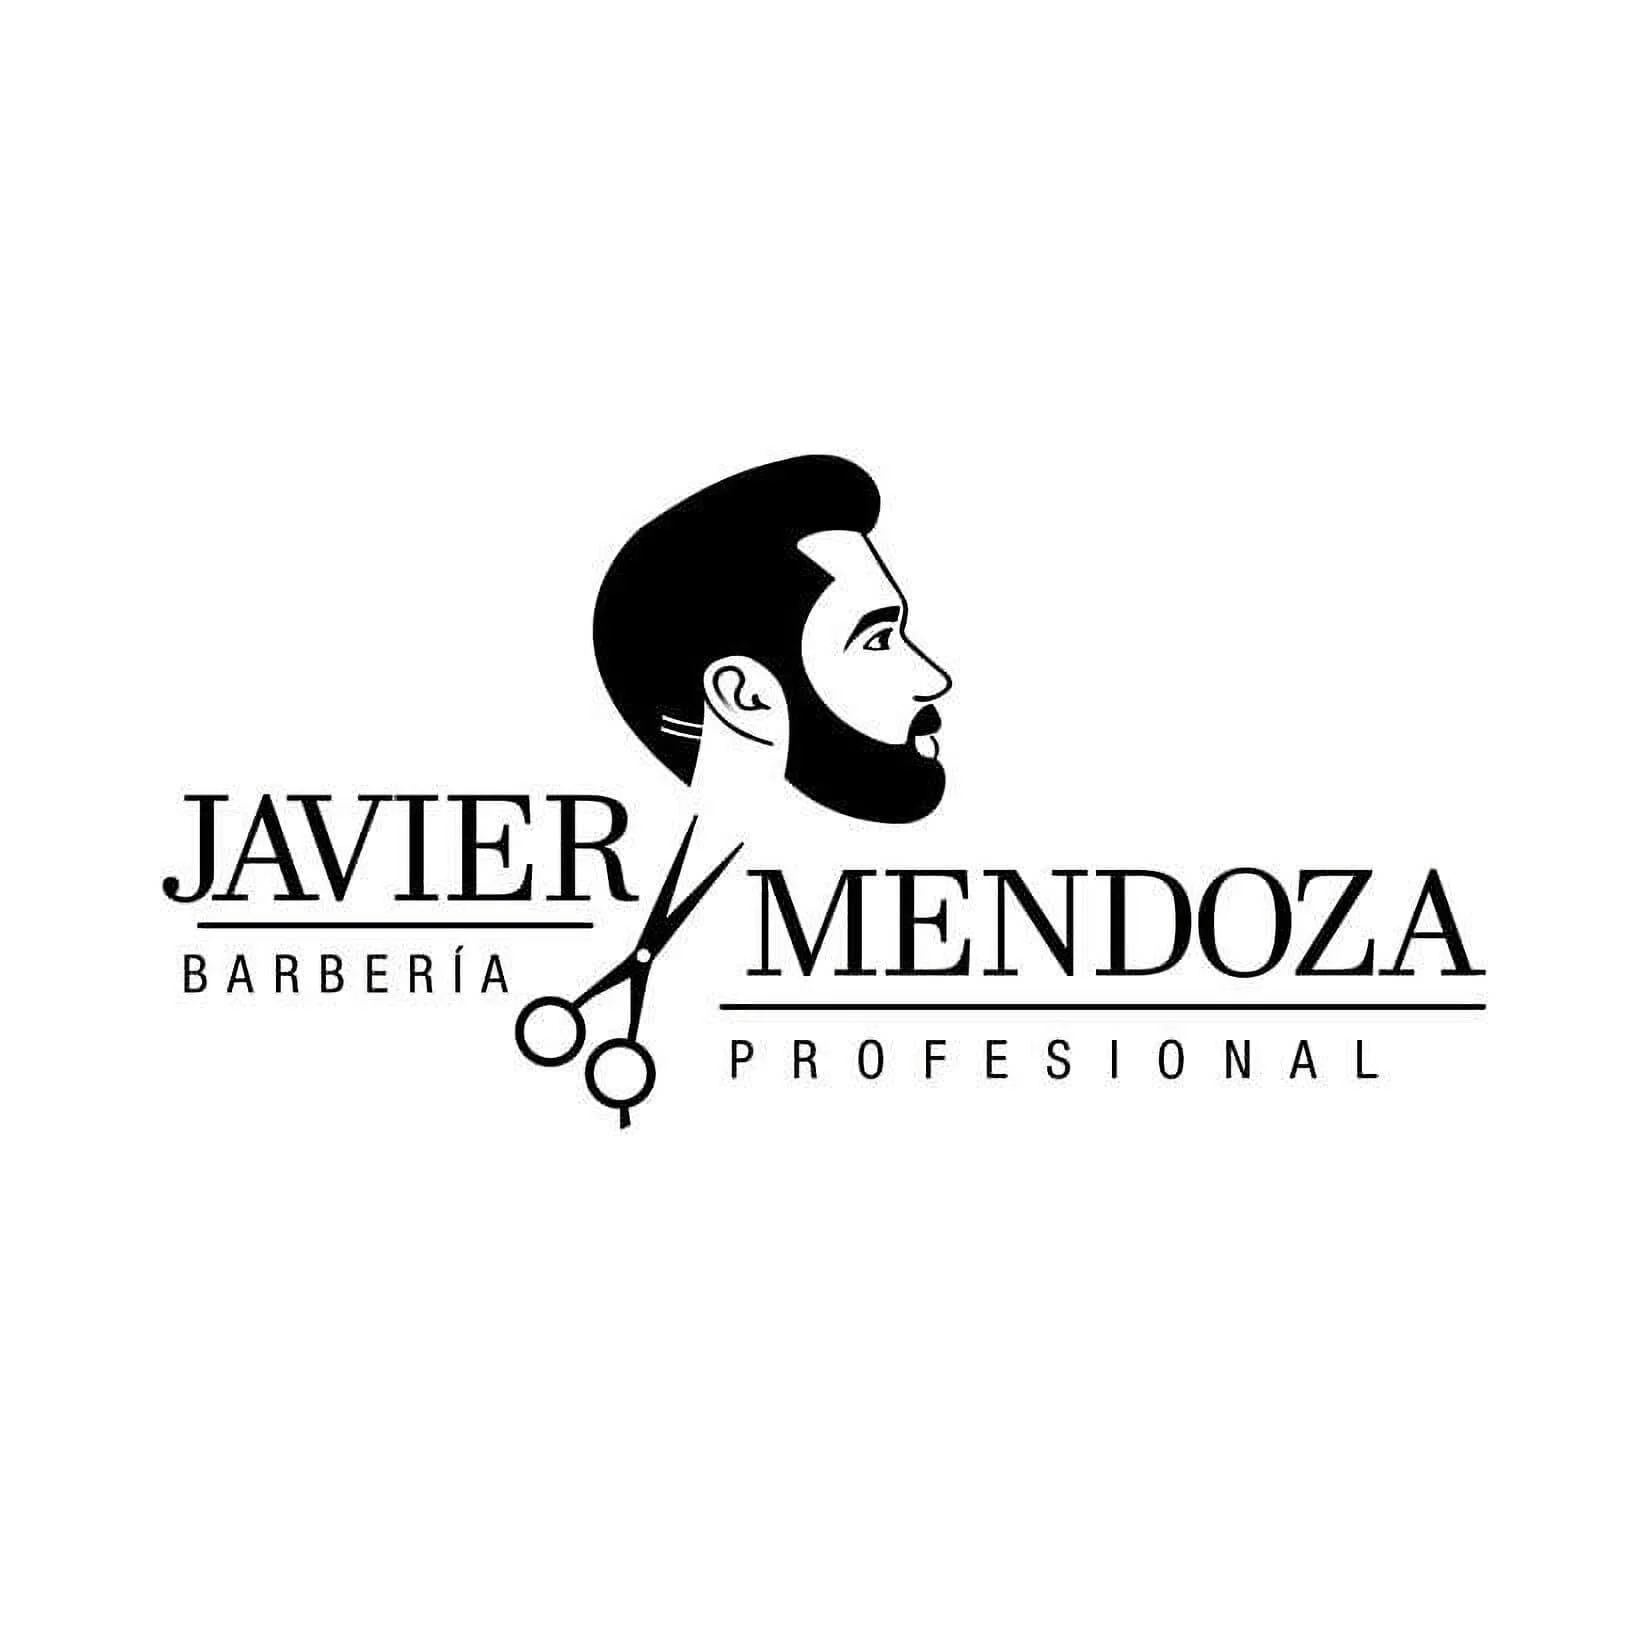 Barberia Javier Mendoza-1570